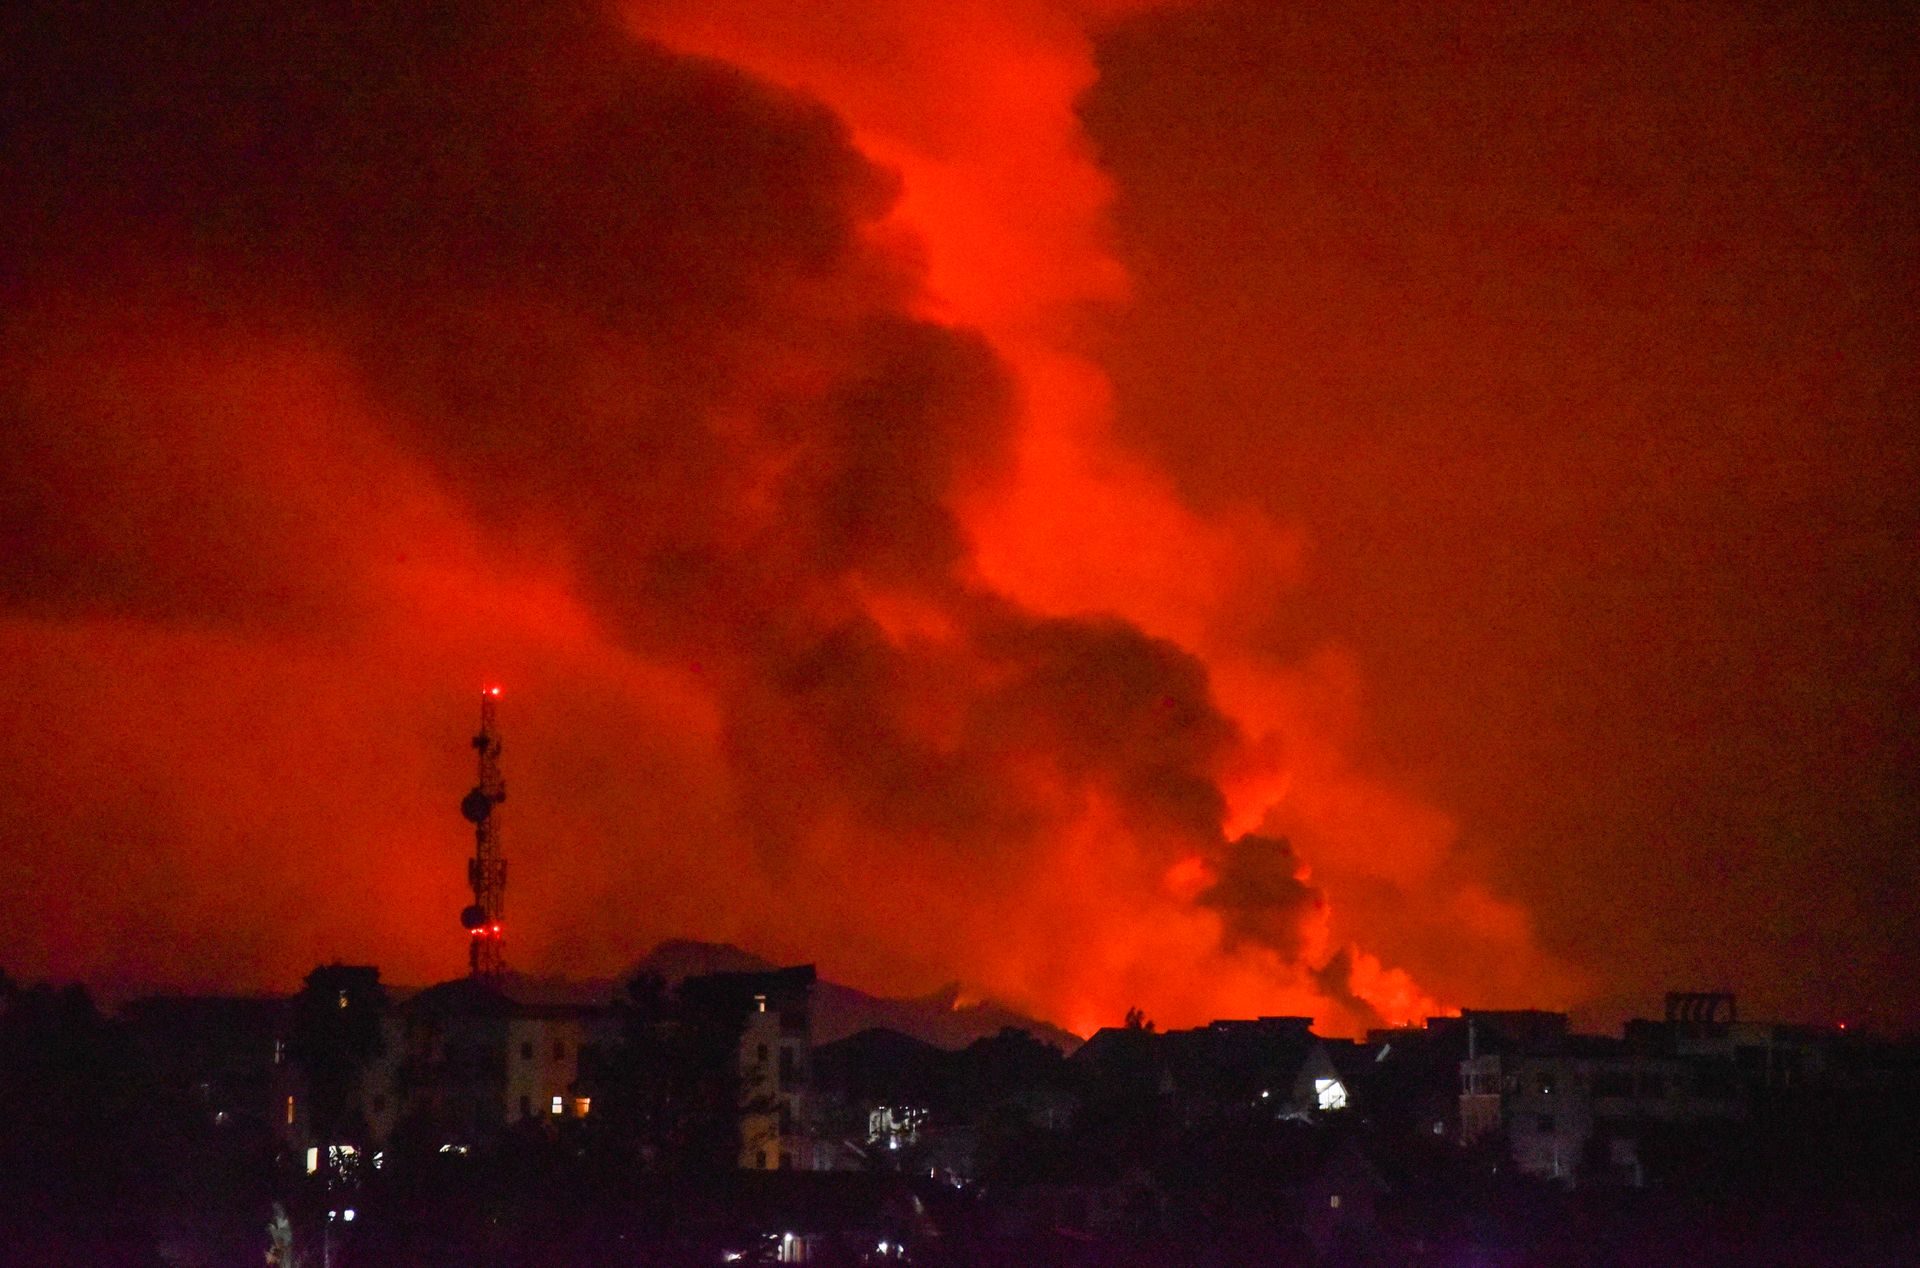 Vulkanutbruddet lyser opp natten i Kongo.